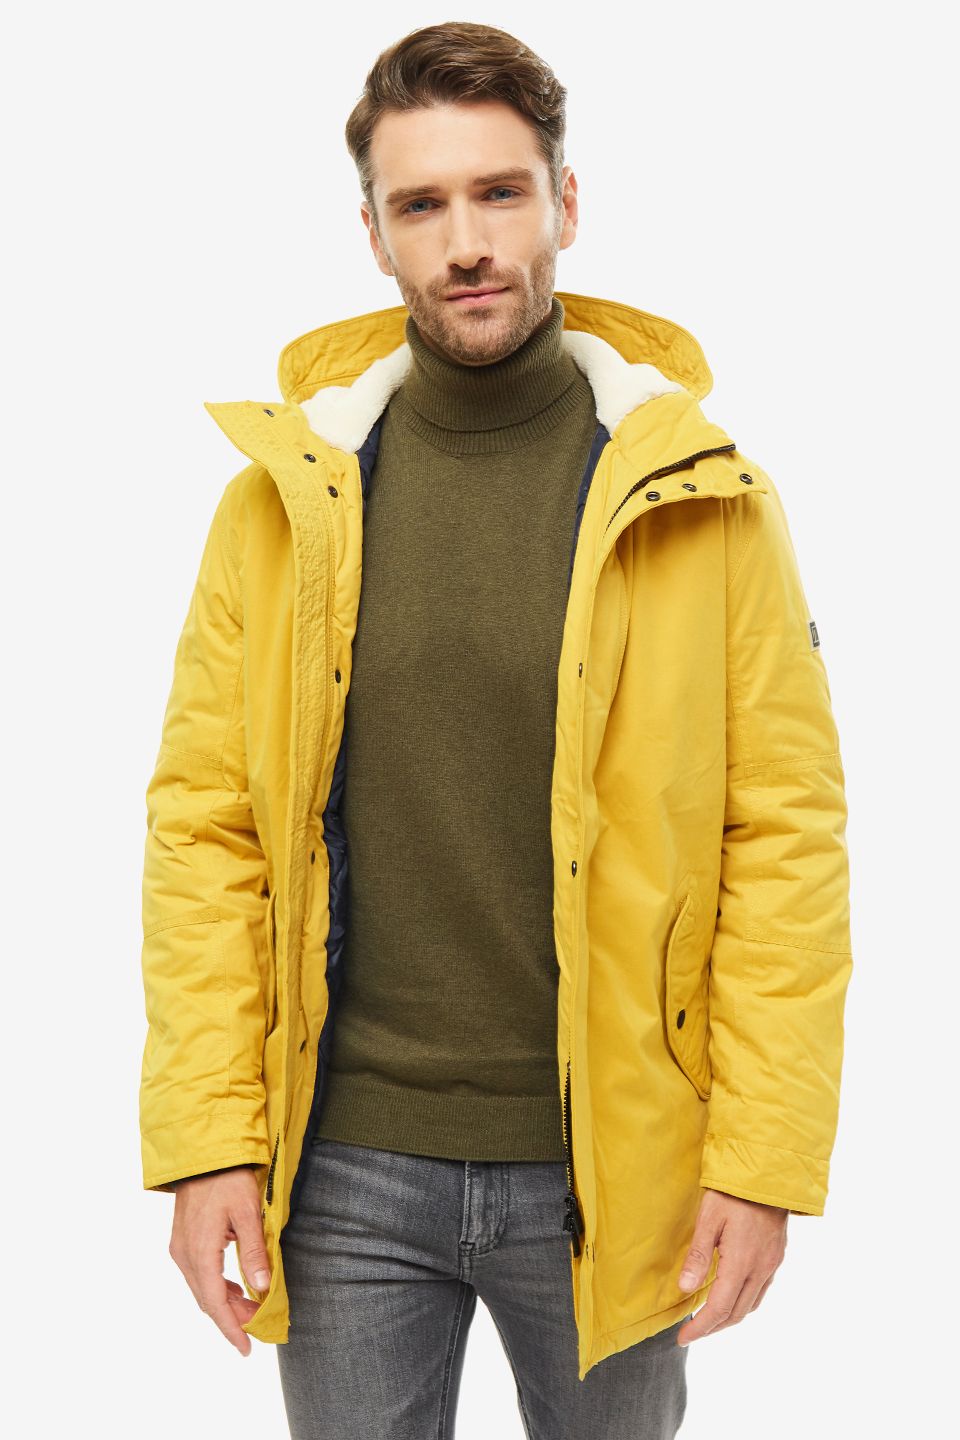 Крокус мужчина в желтой куртке